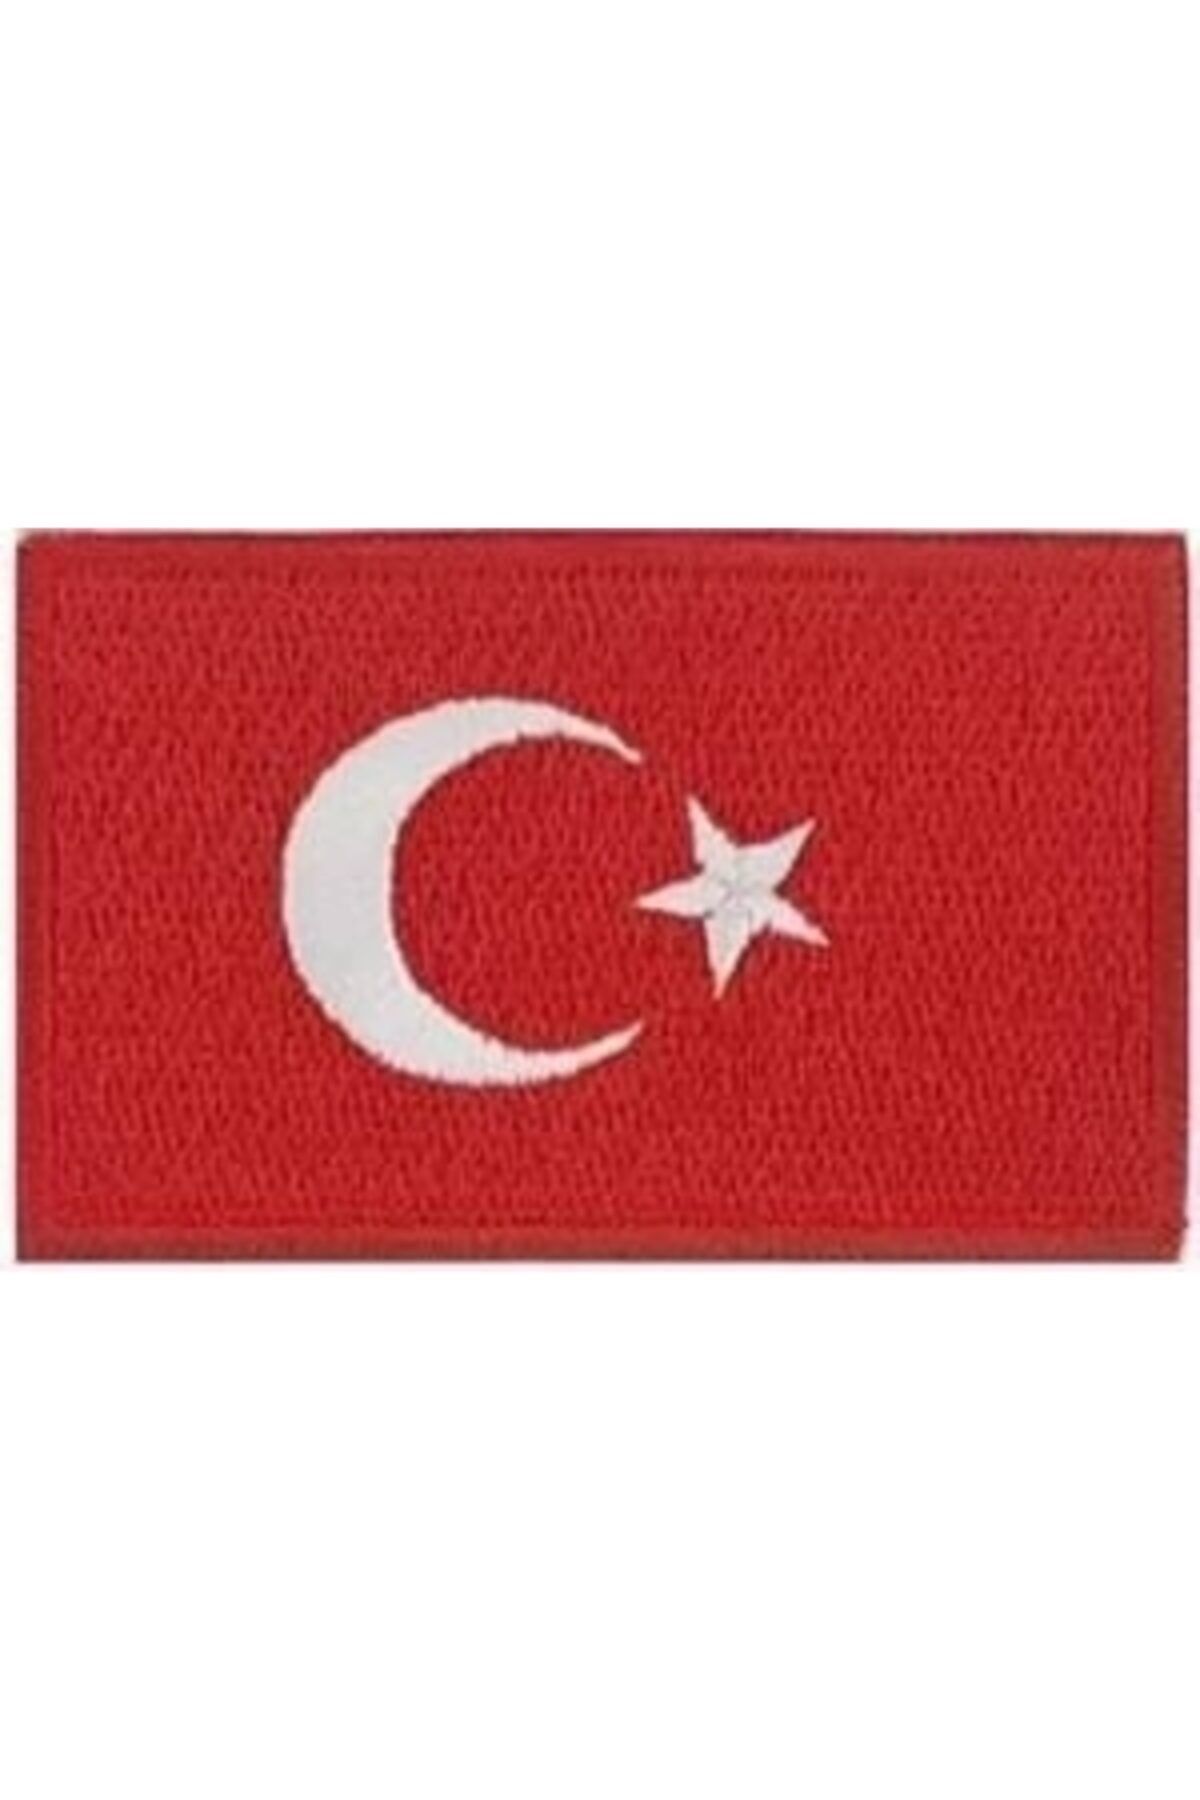 Sim Nakış Cırt Bantlı Turkey Türkiye Türk Bayrakları Nakış Işleme Arma Patch Peç 3x5 Cm Kırmızı Beyaz